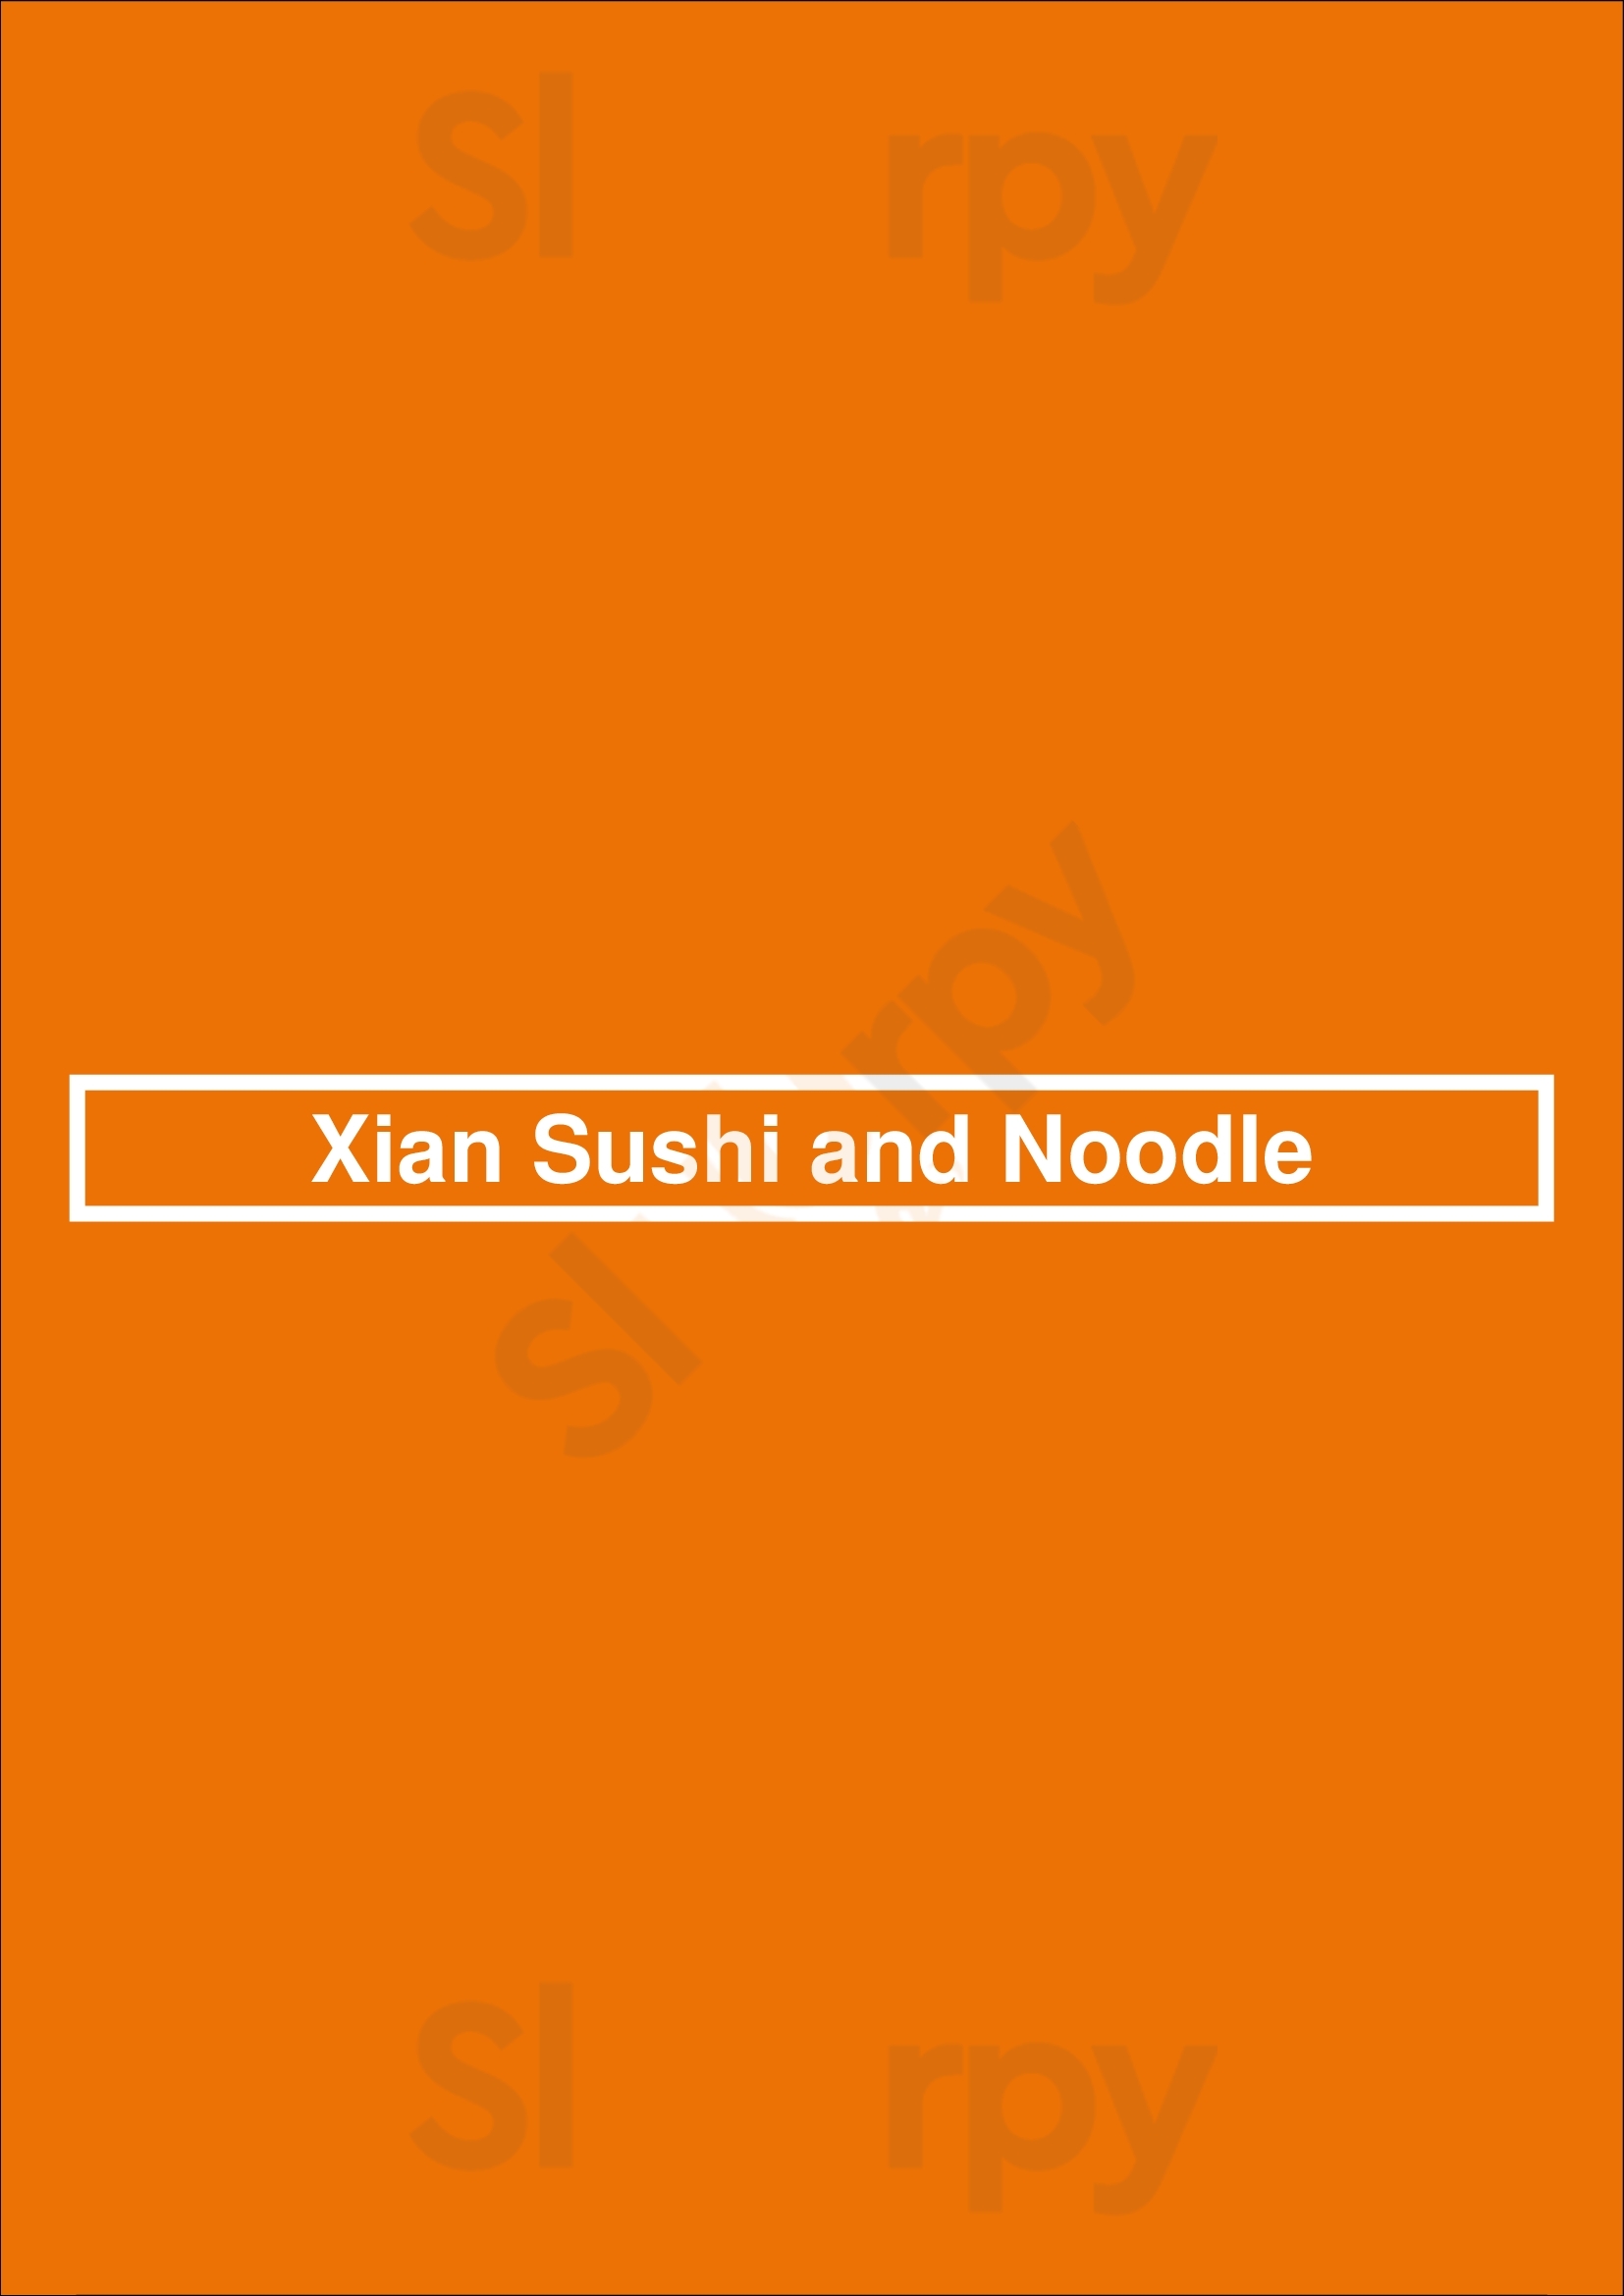 Xian Sushi & Noodle Austin Menu - 1